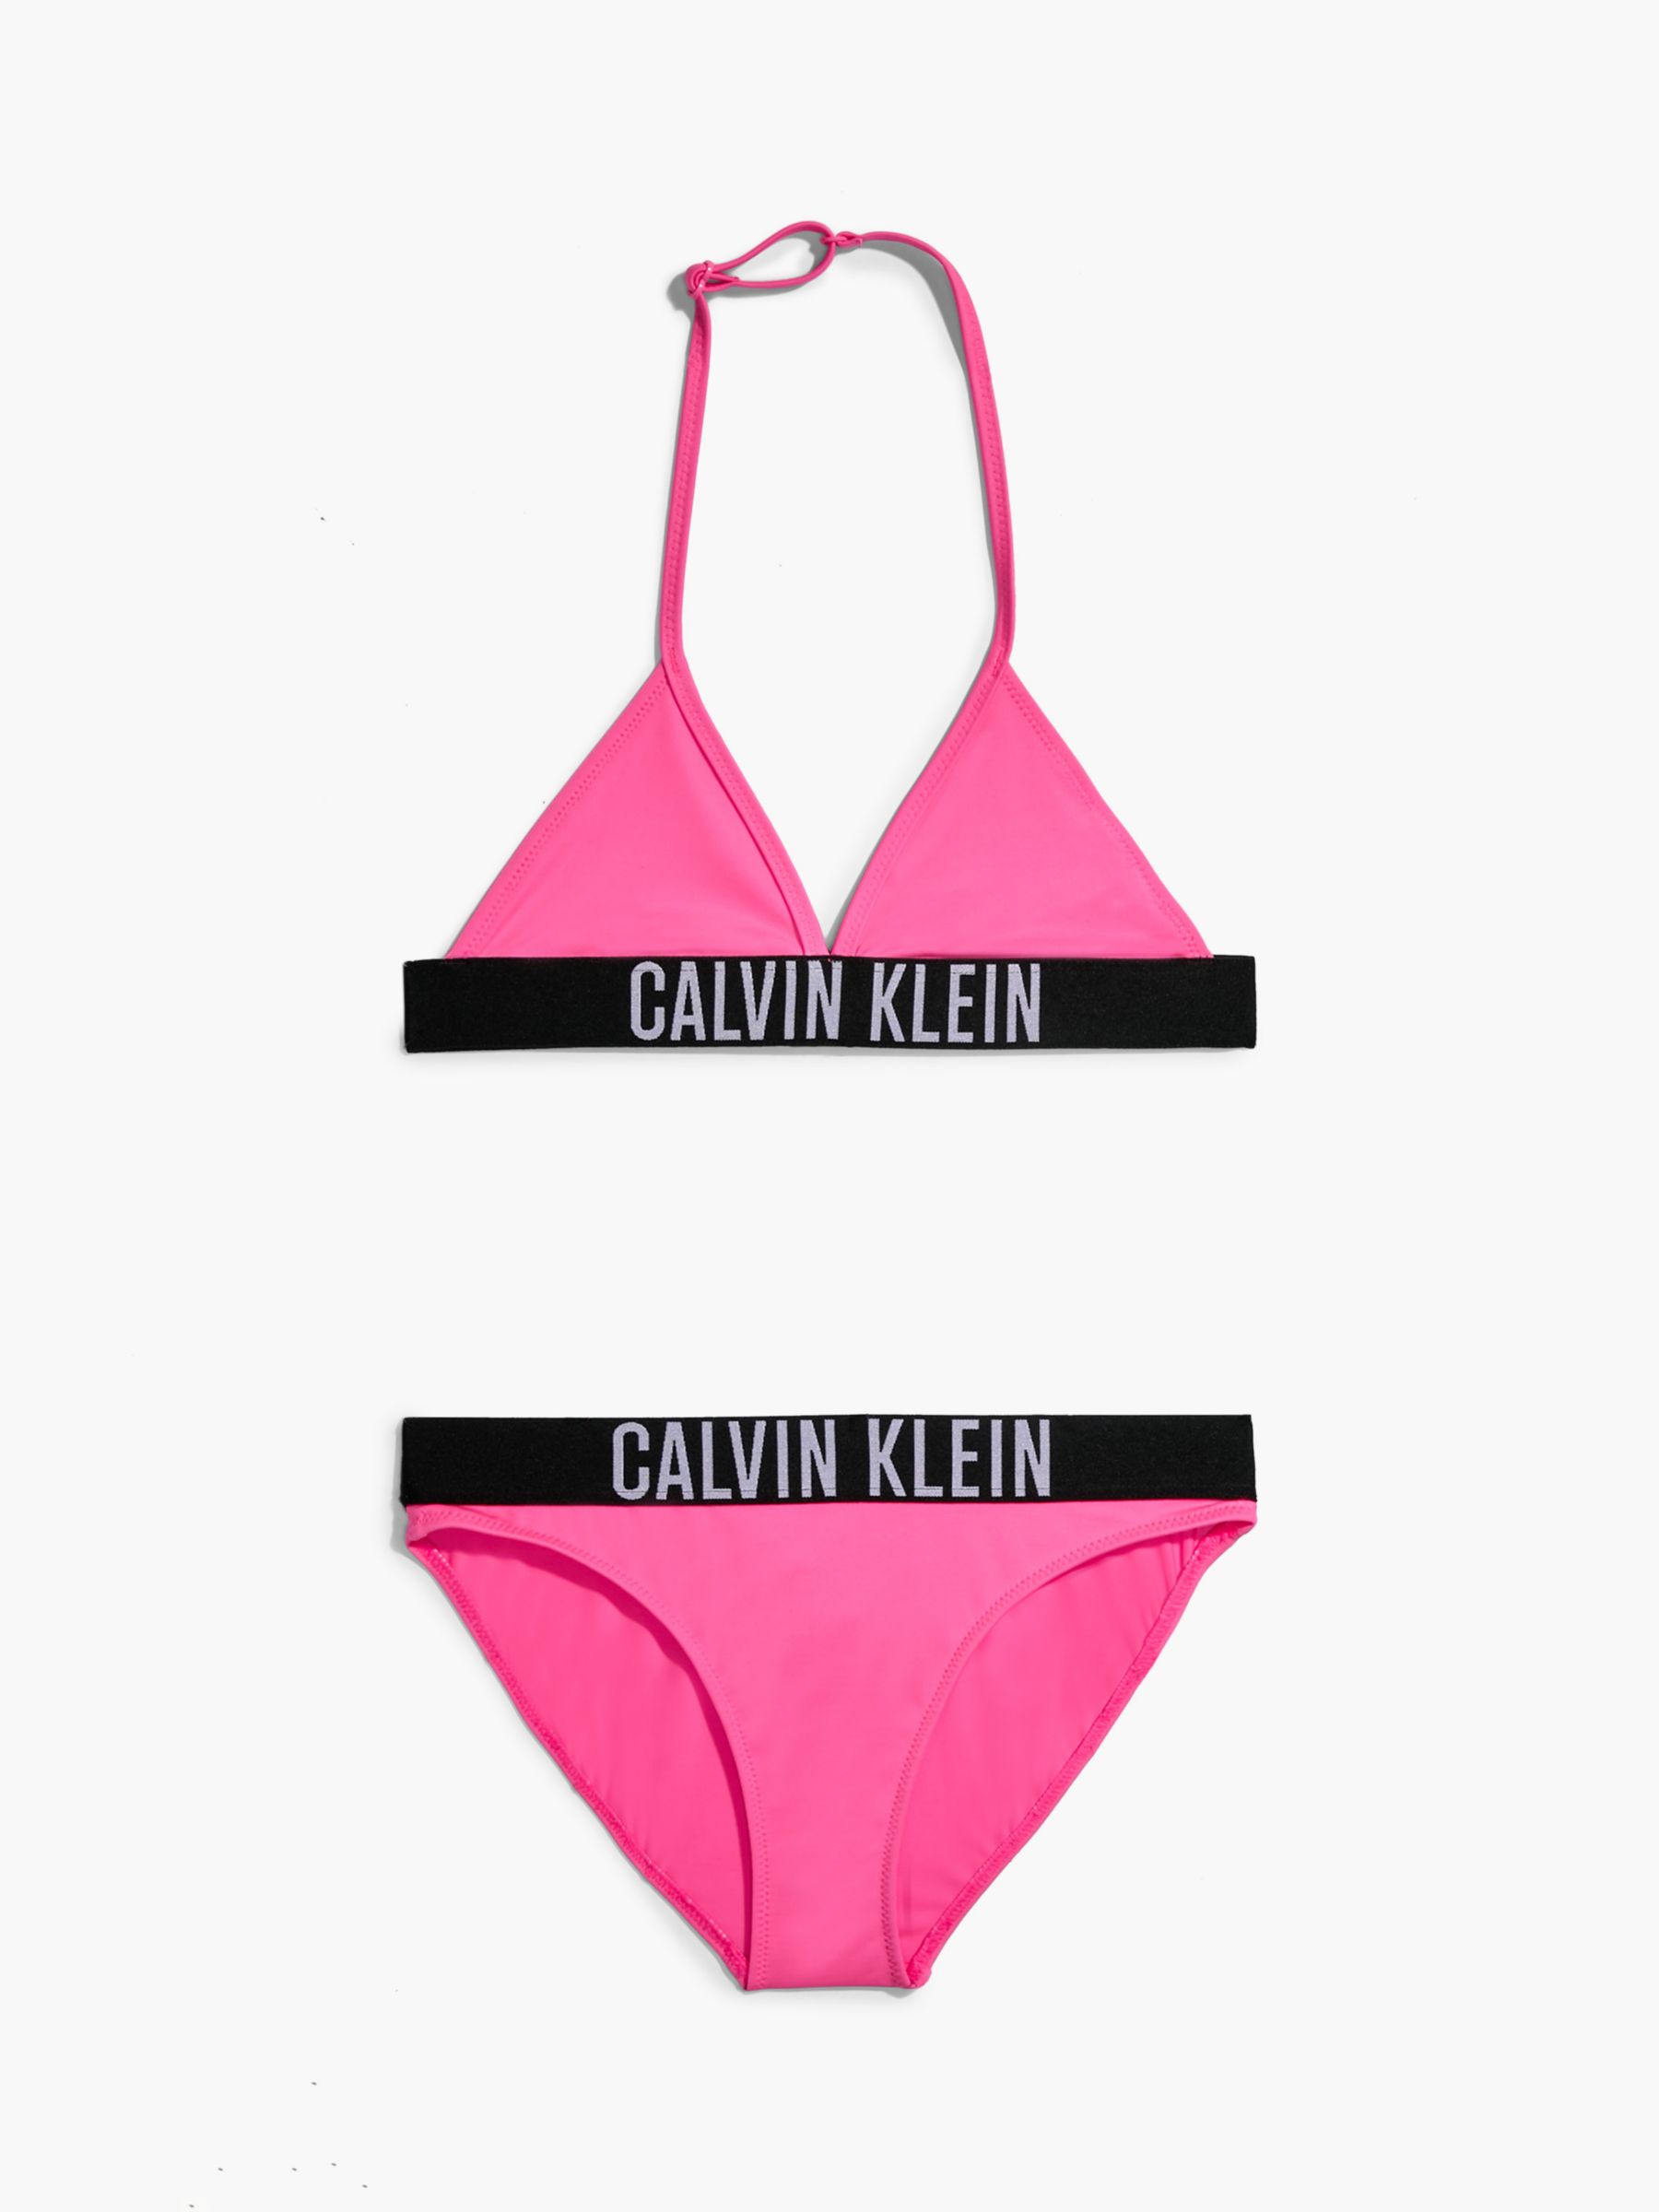 Calvin Klein Kids' Triangle Bikini Set, Loud Pink at John Lewis & Partners